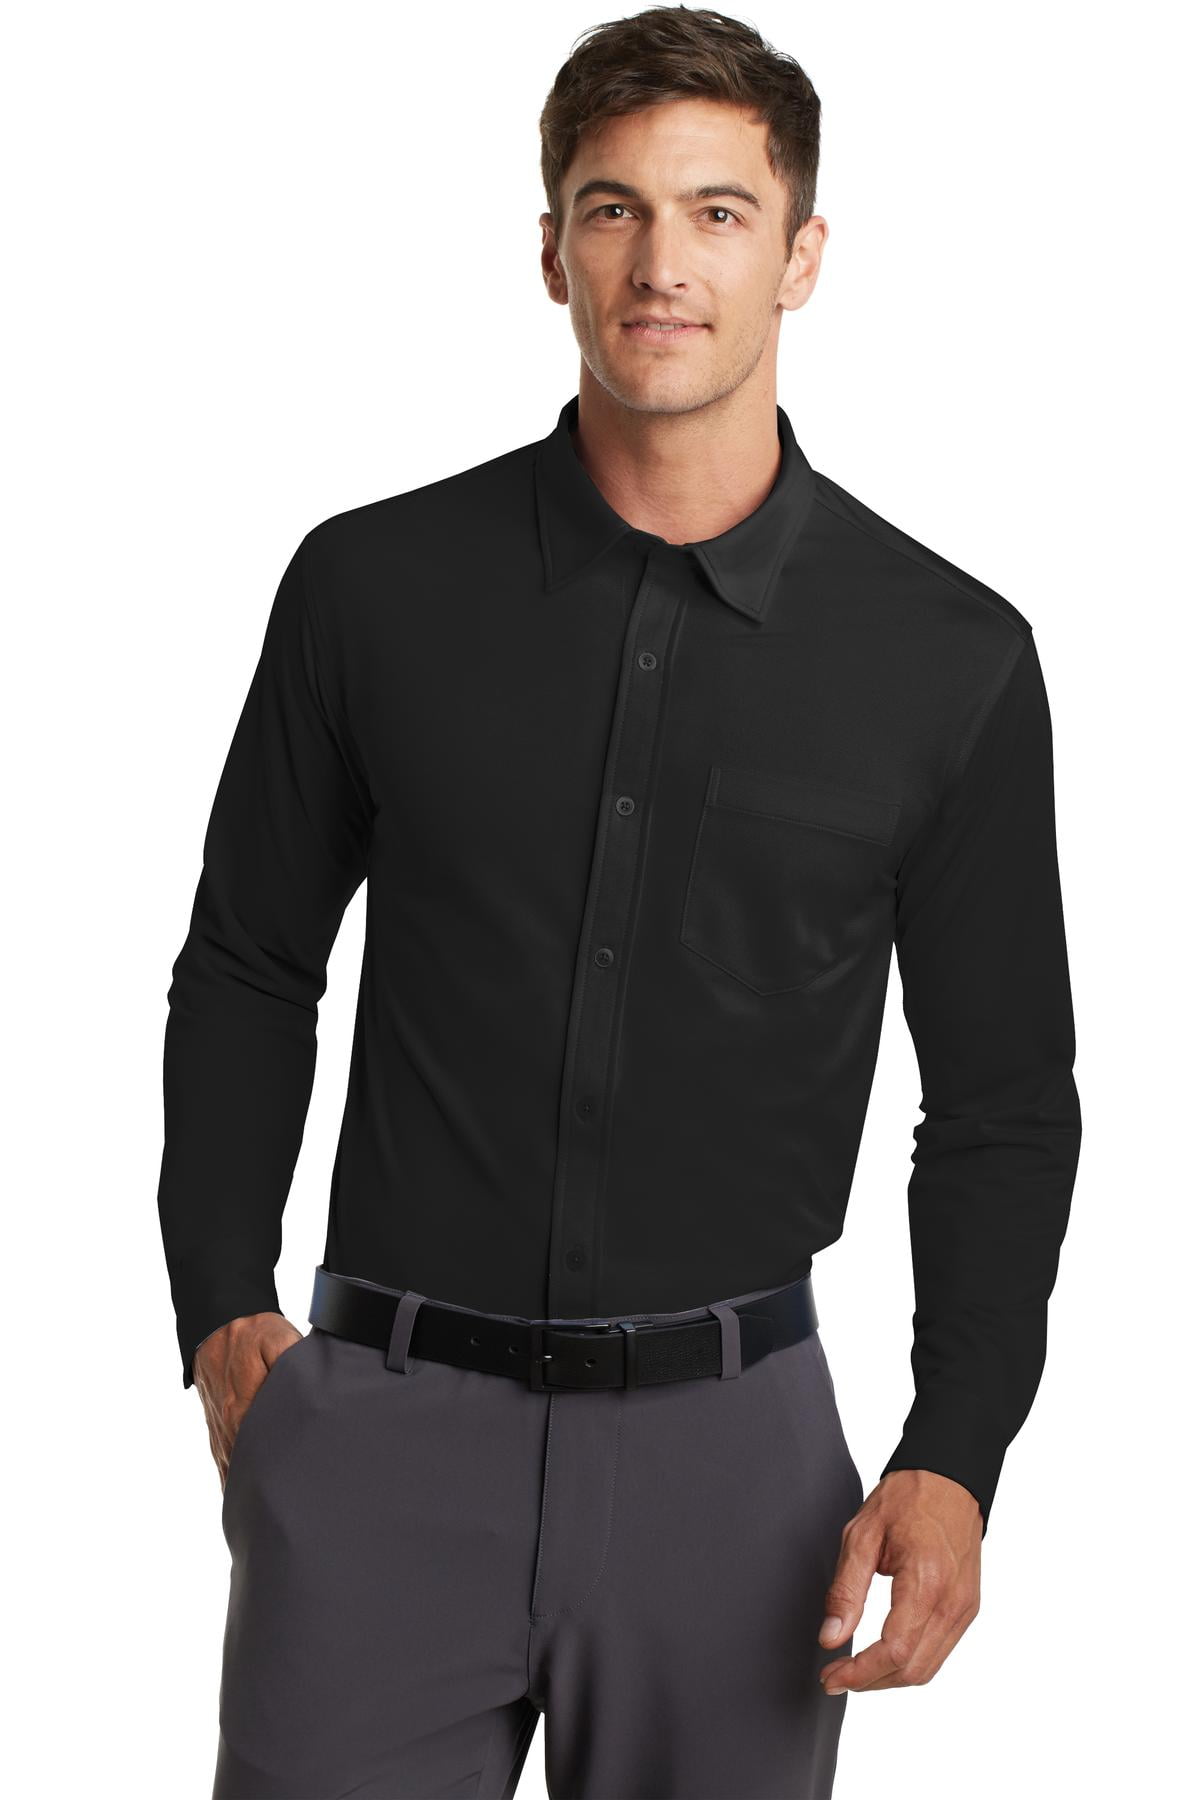 Port Authority Dimension Knit Dress Shirt-S (Black)